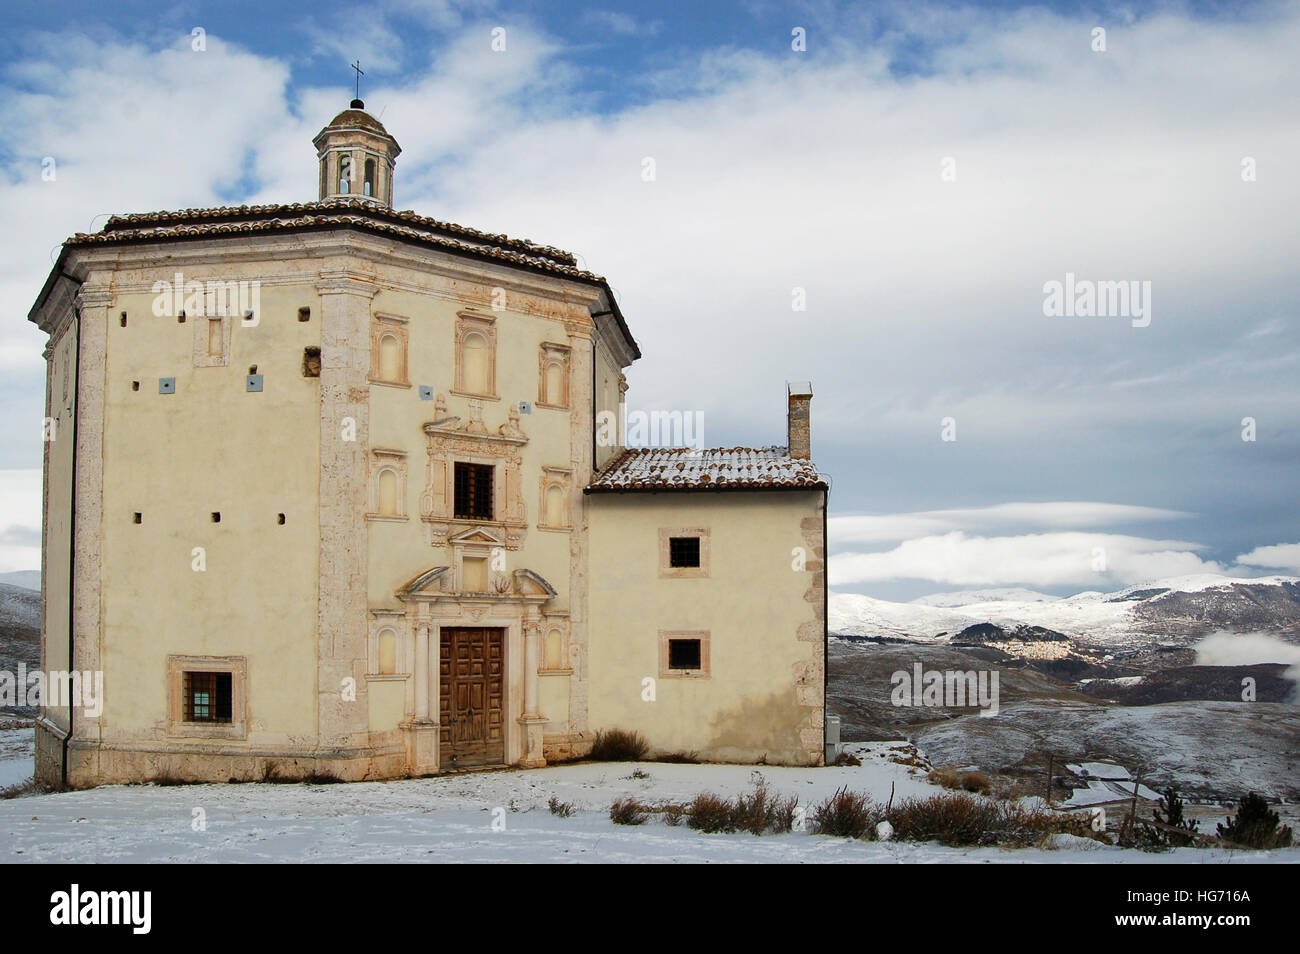 L'église de Sainte Marie de piété près de castle Calascio dans les Abruzzes (Italie) Banque D'Images